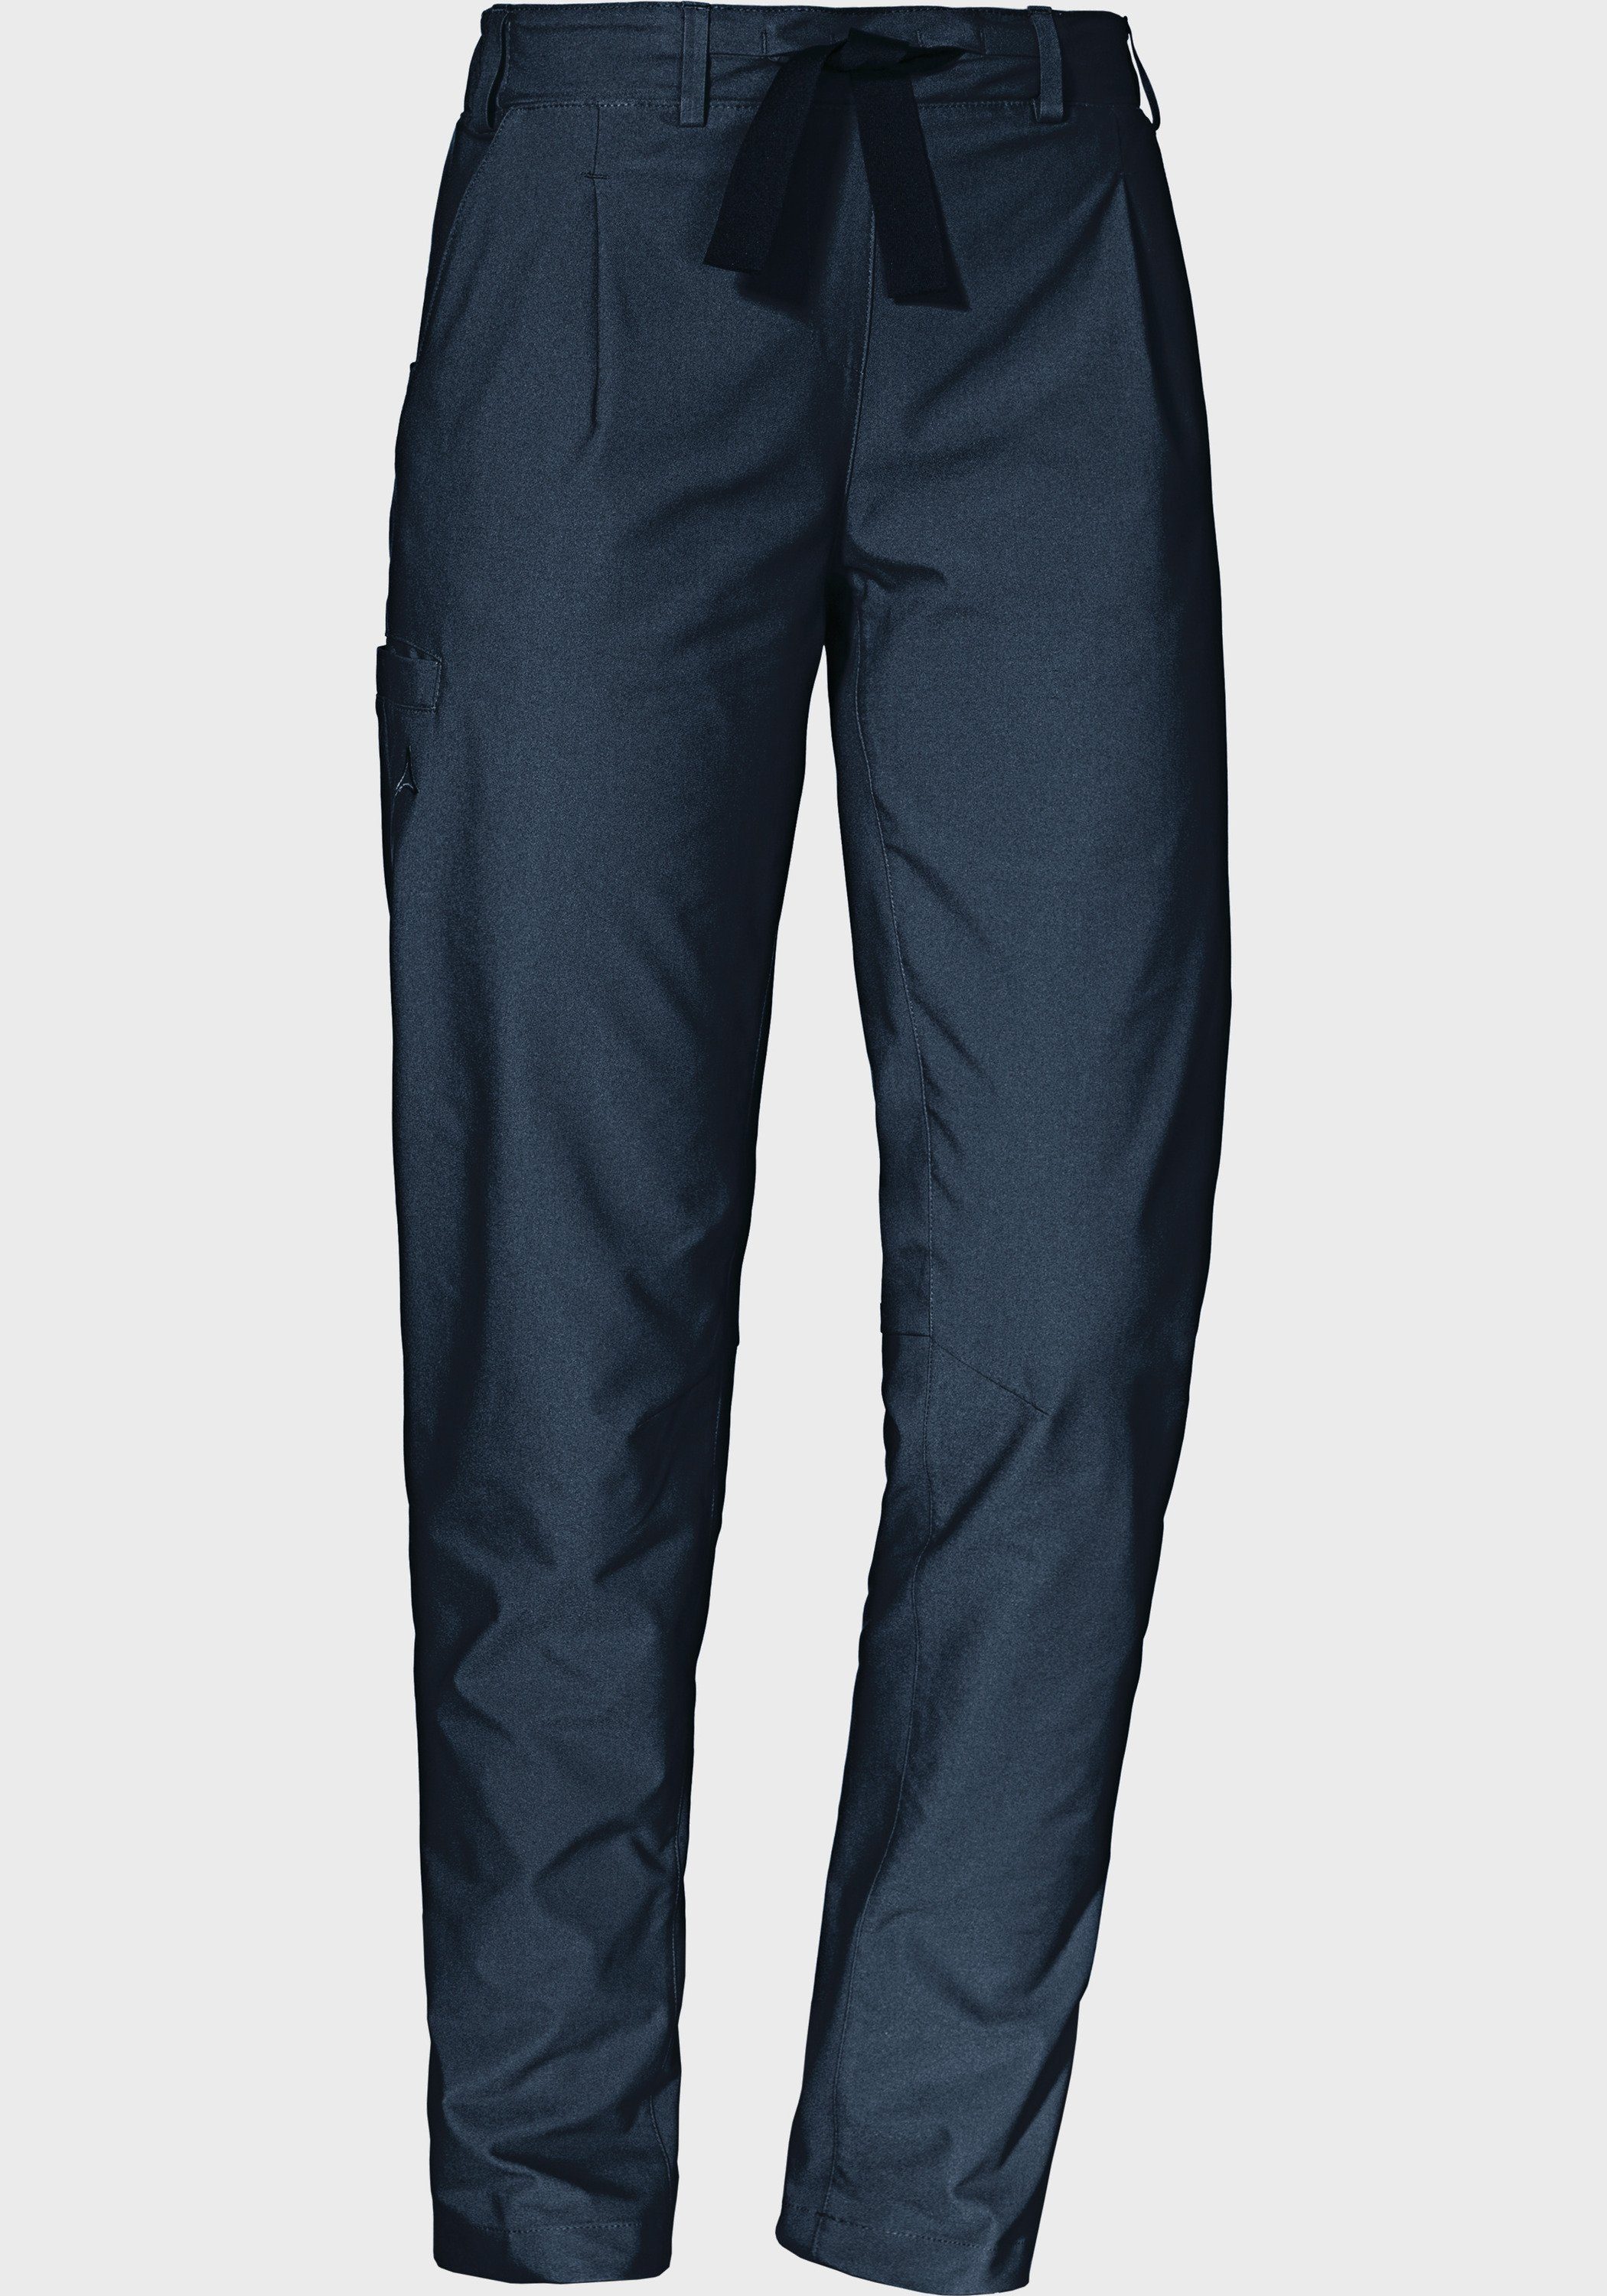 [Besonderheit, Qualitätsprodukte] Schöffel Outdoorhose L Oaktree Pants blau